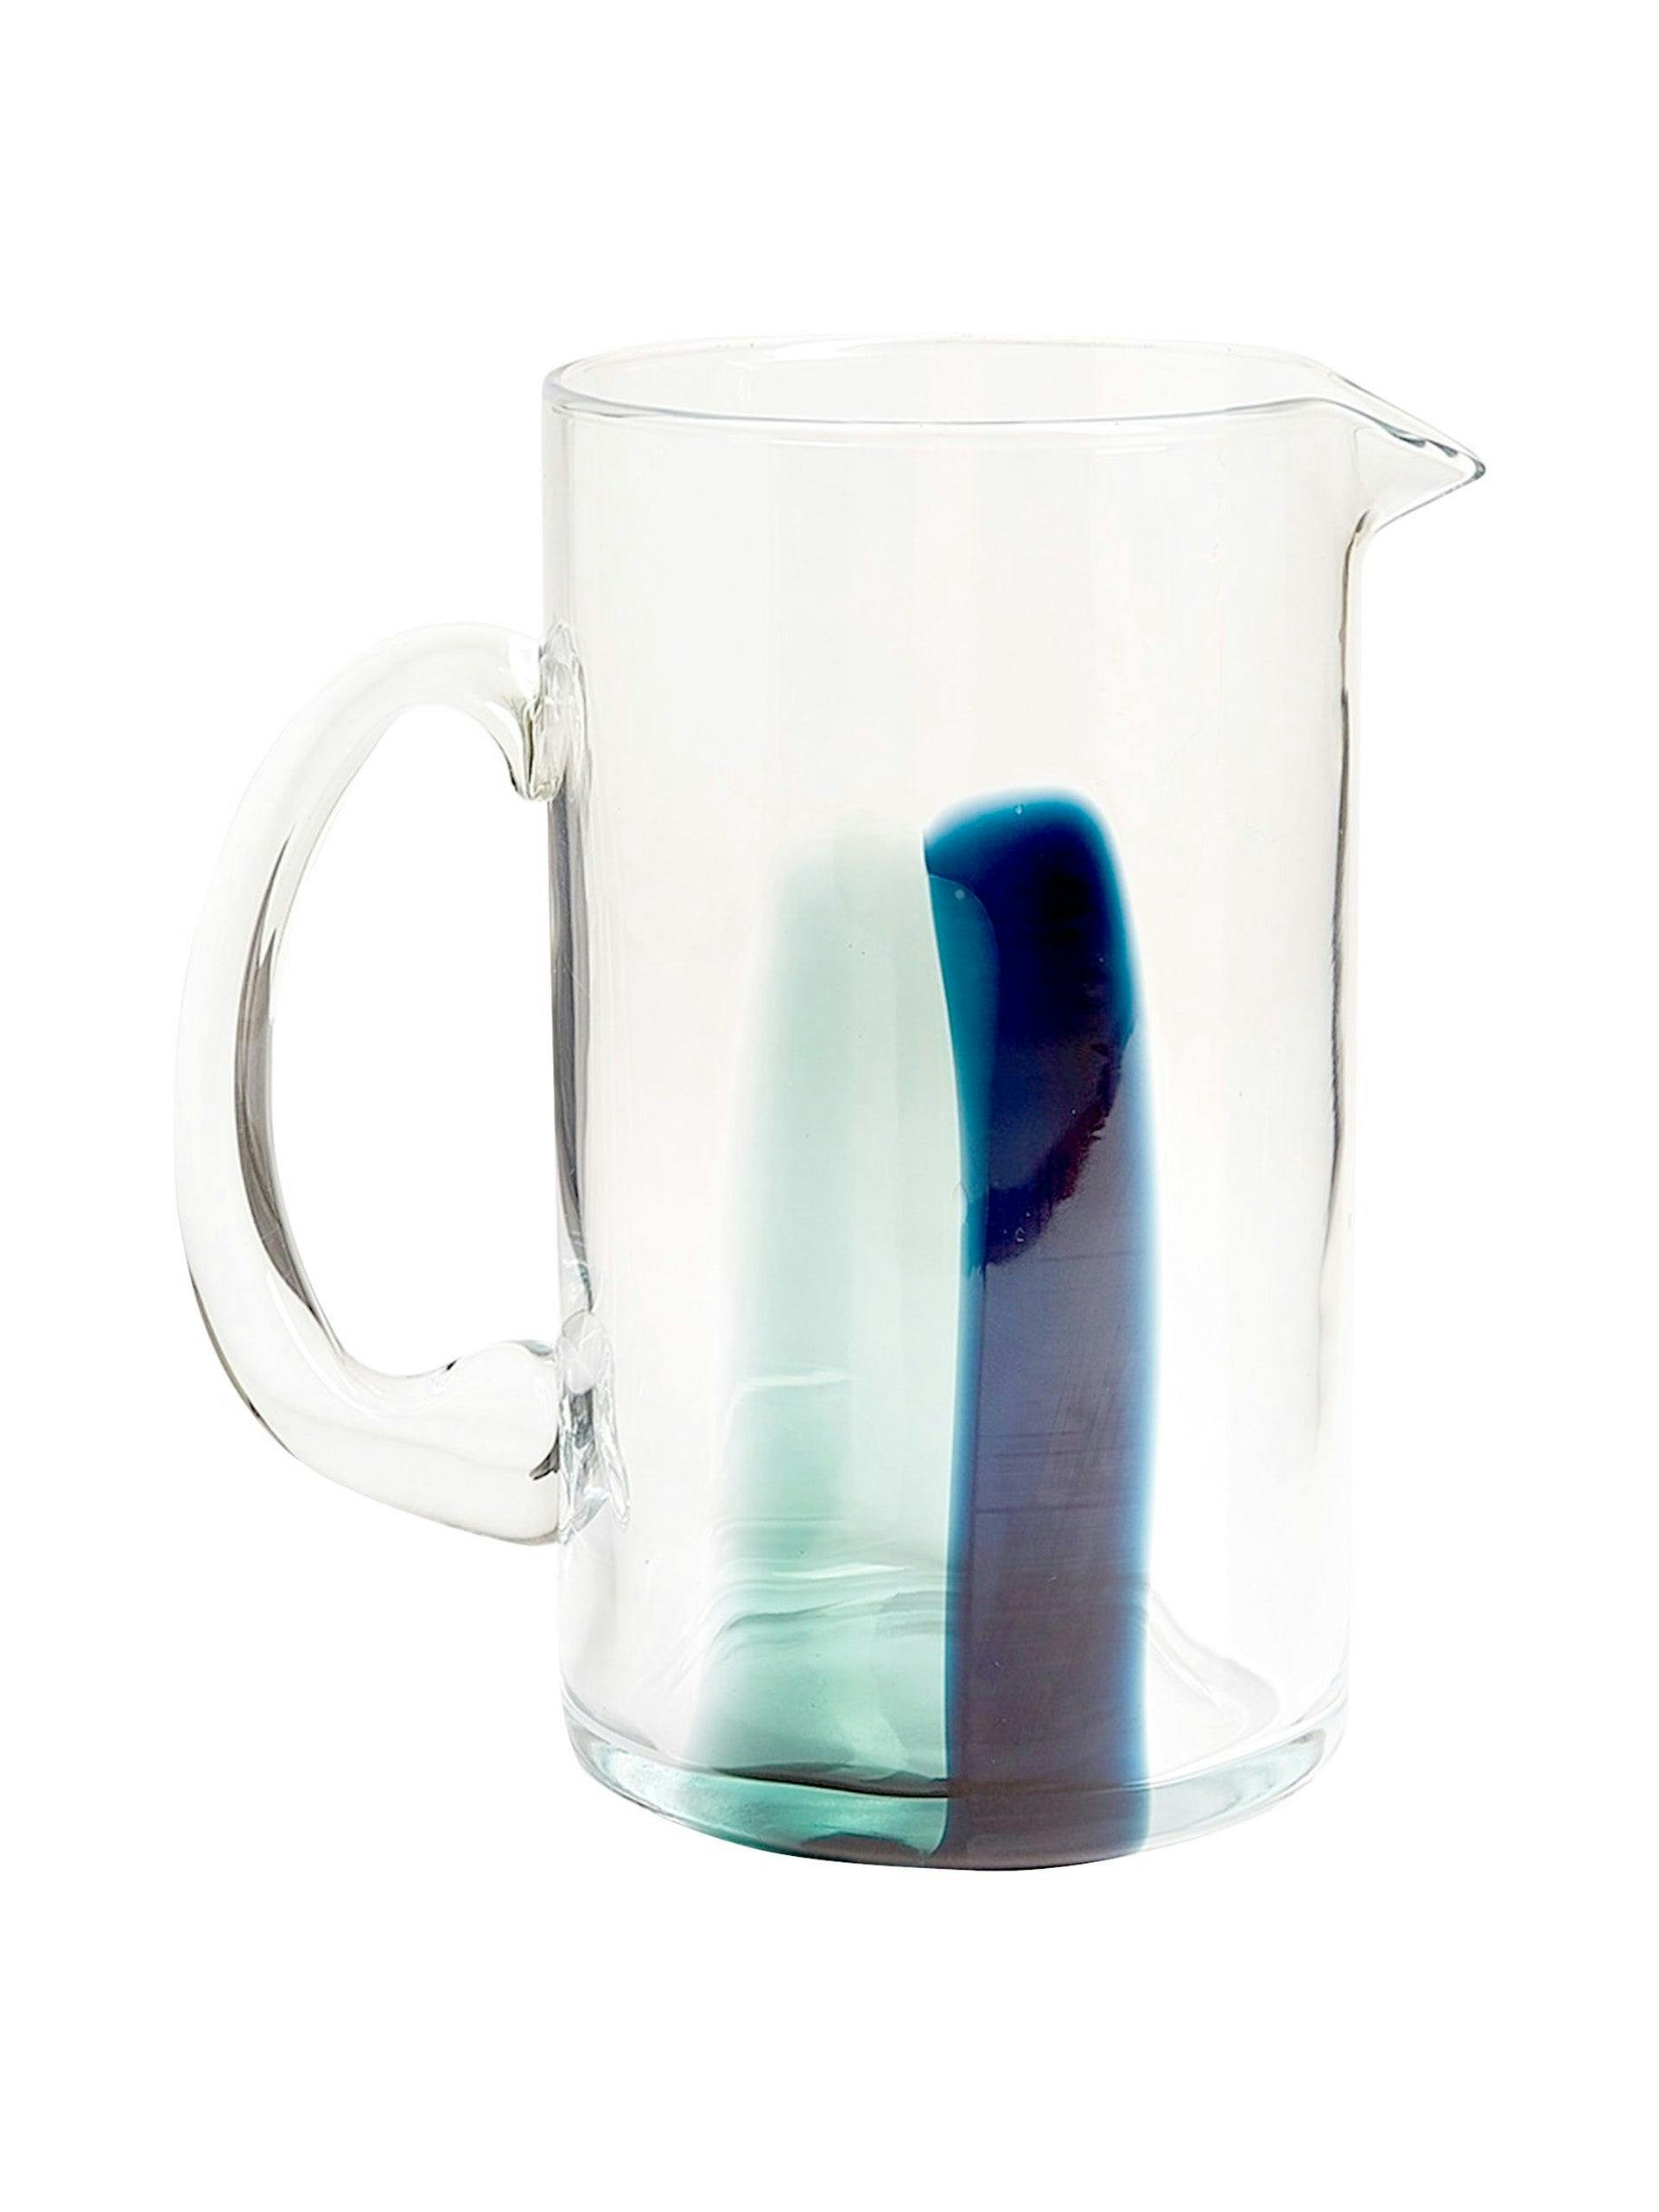 Stripe glass jug